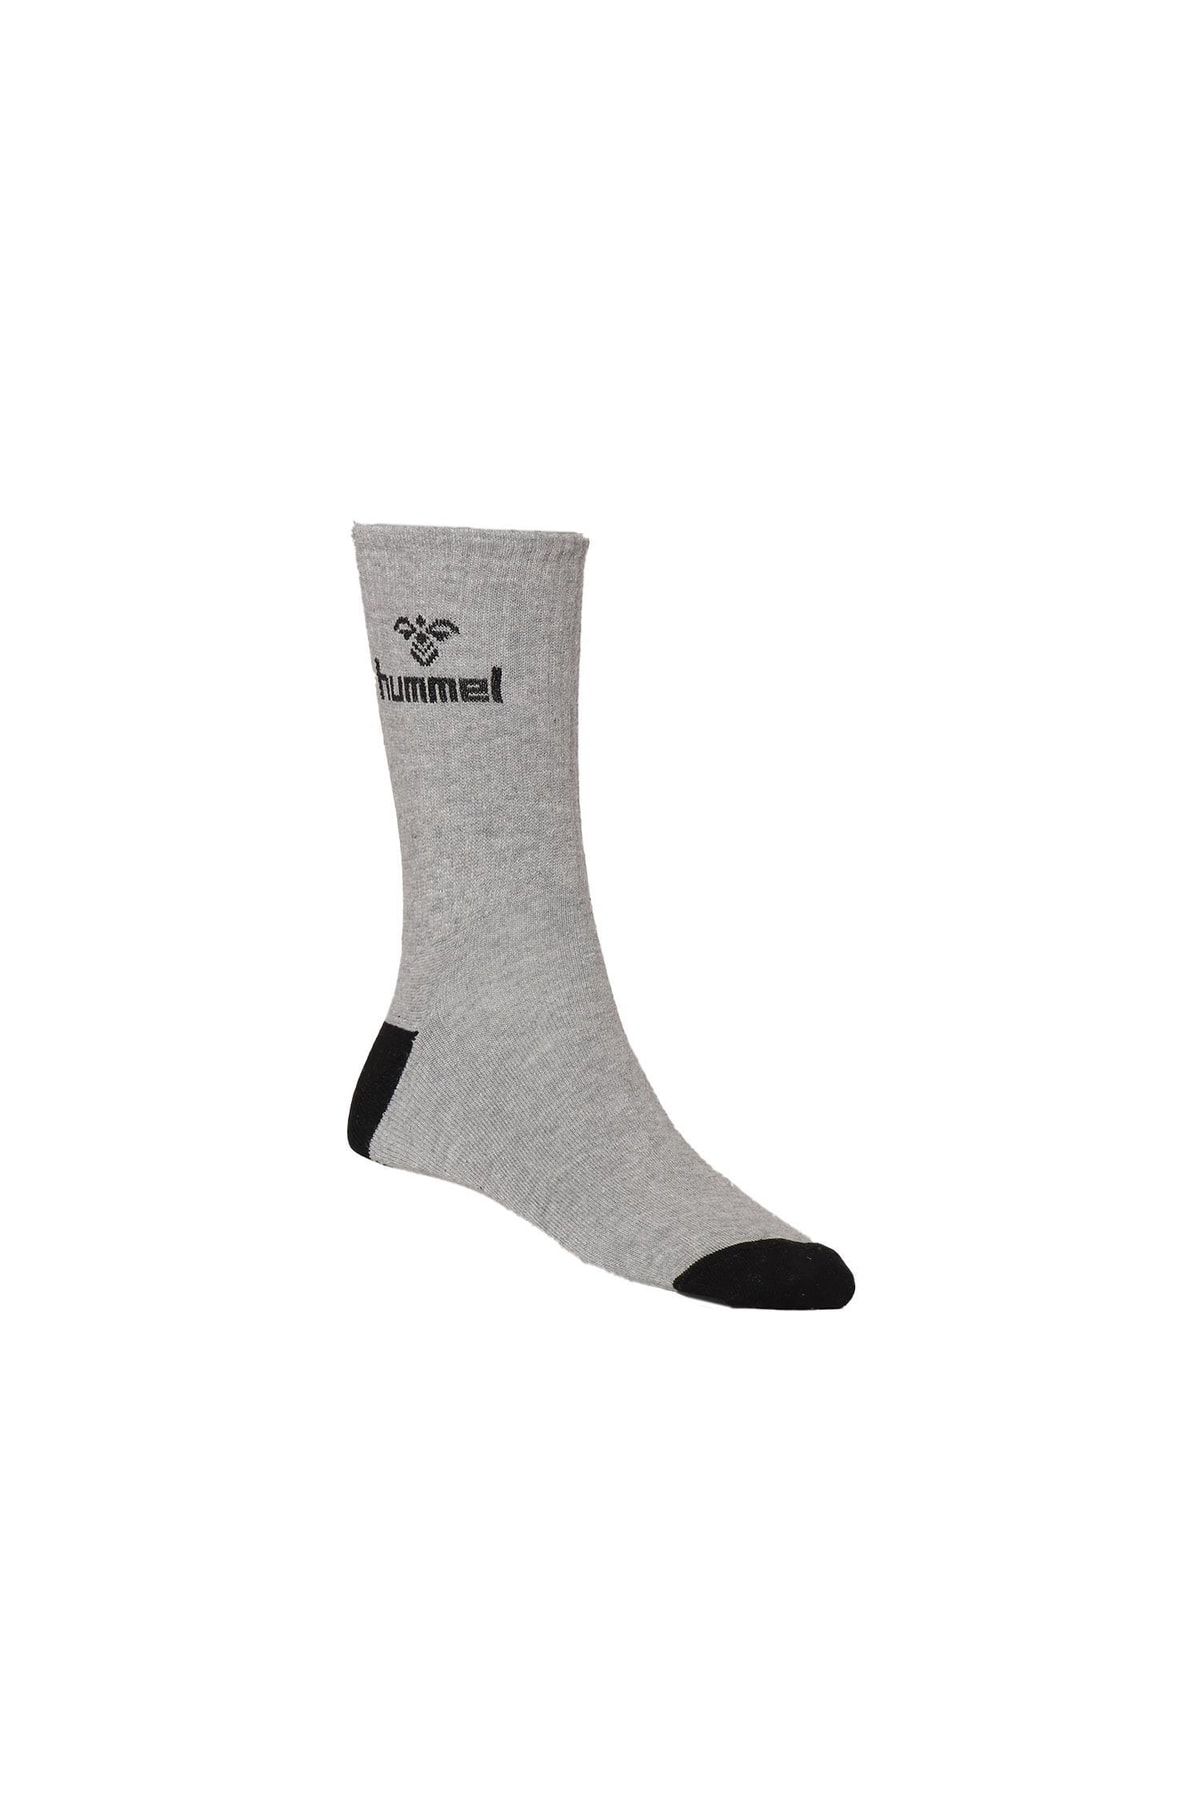 hummel Hmltrockı Mıdı Socks